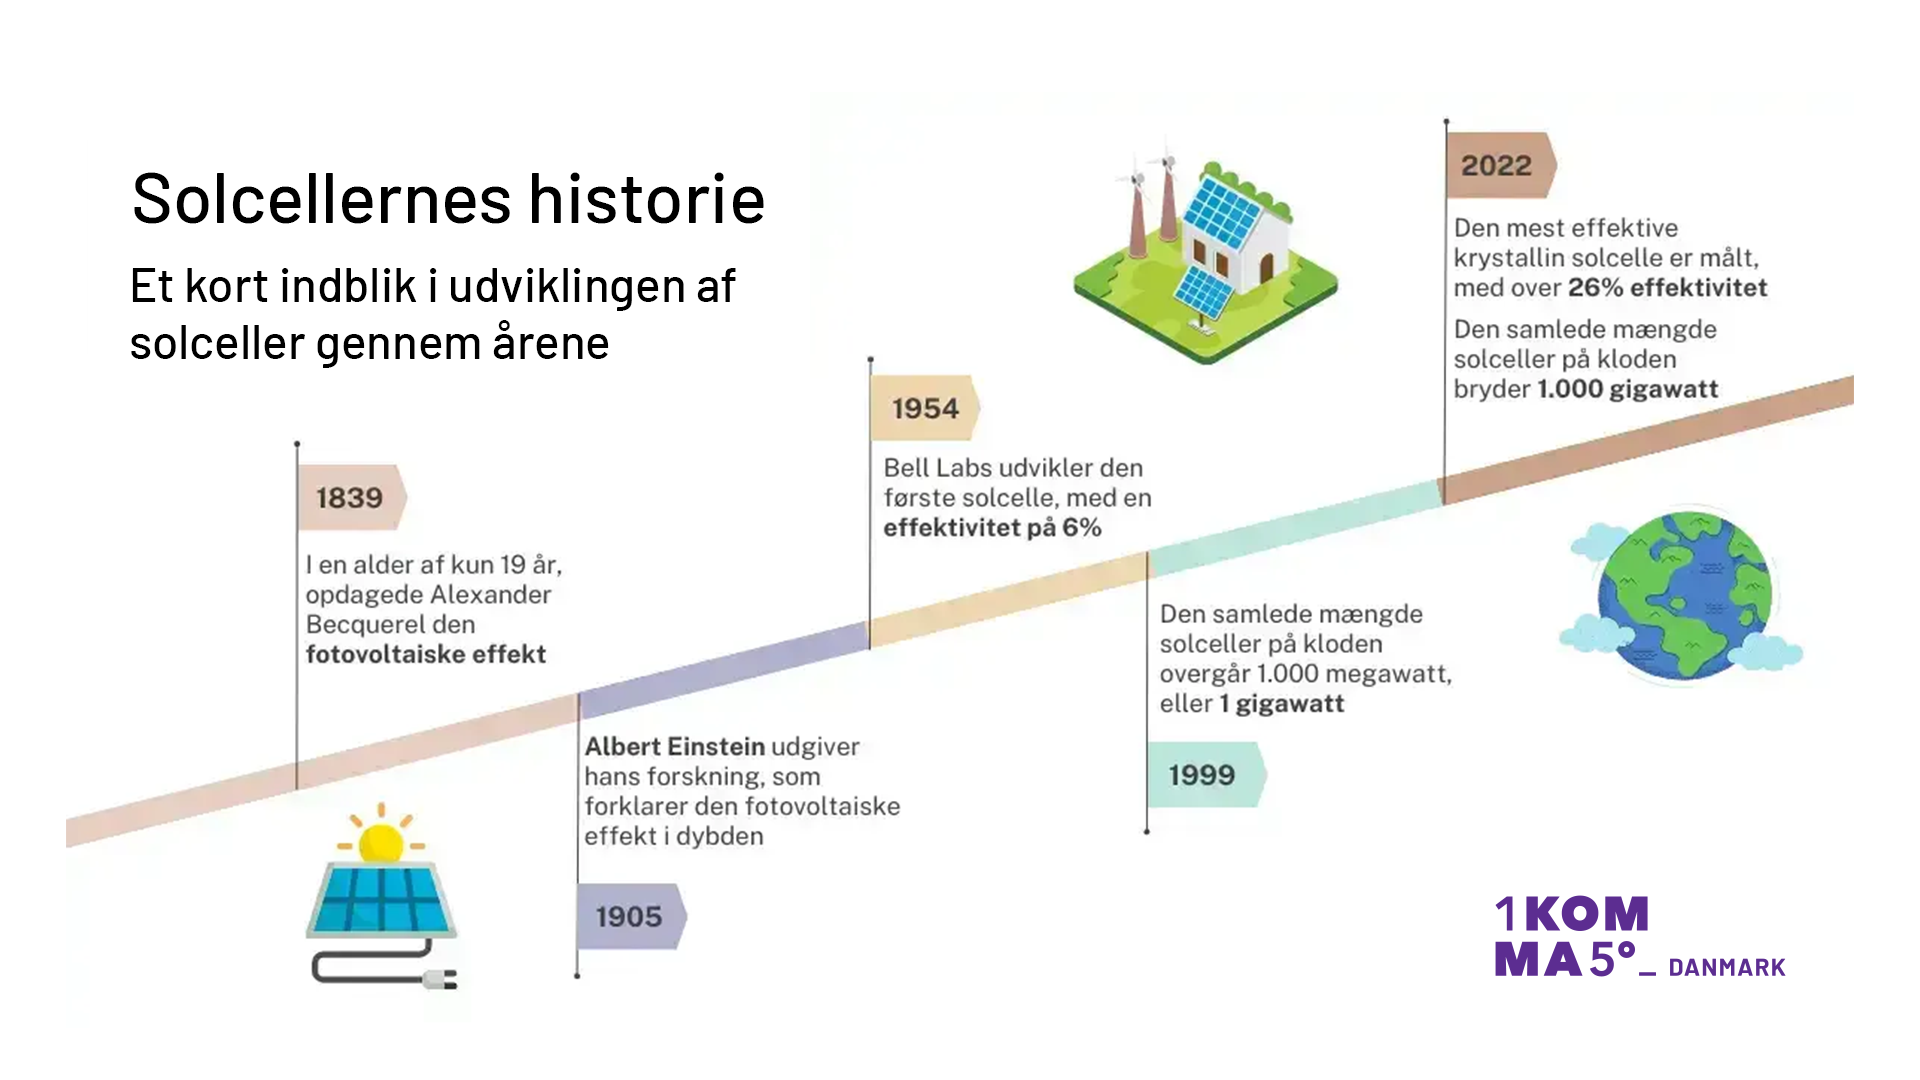 Solcellernes historie fra 1839 til 2022